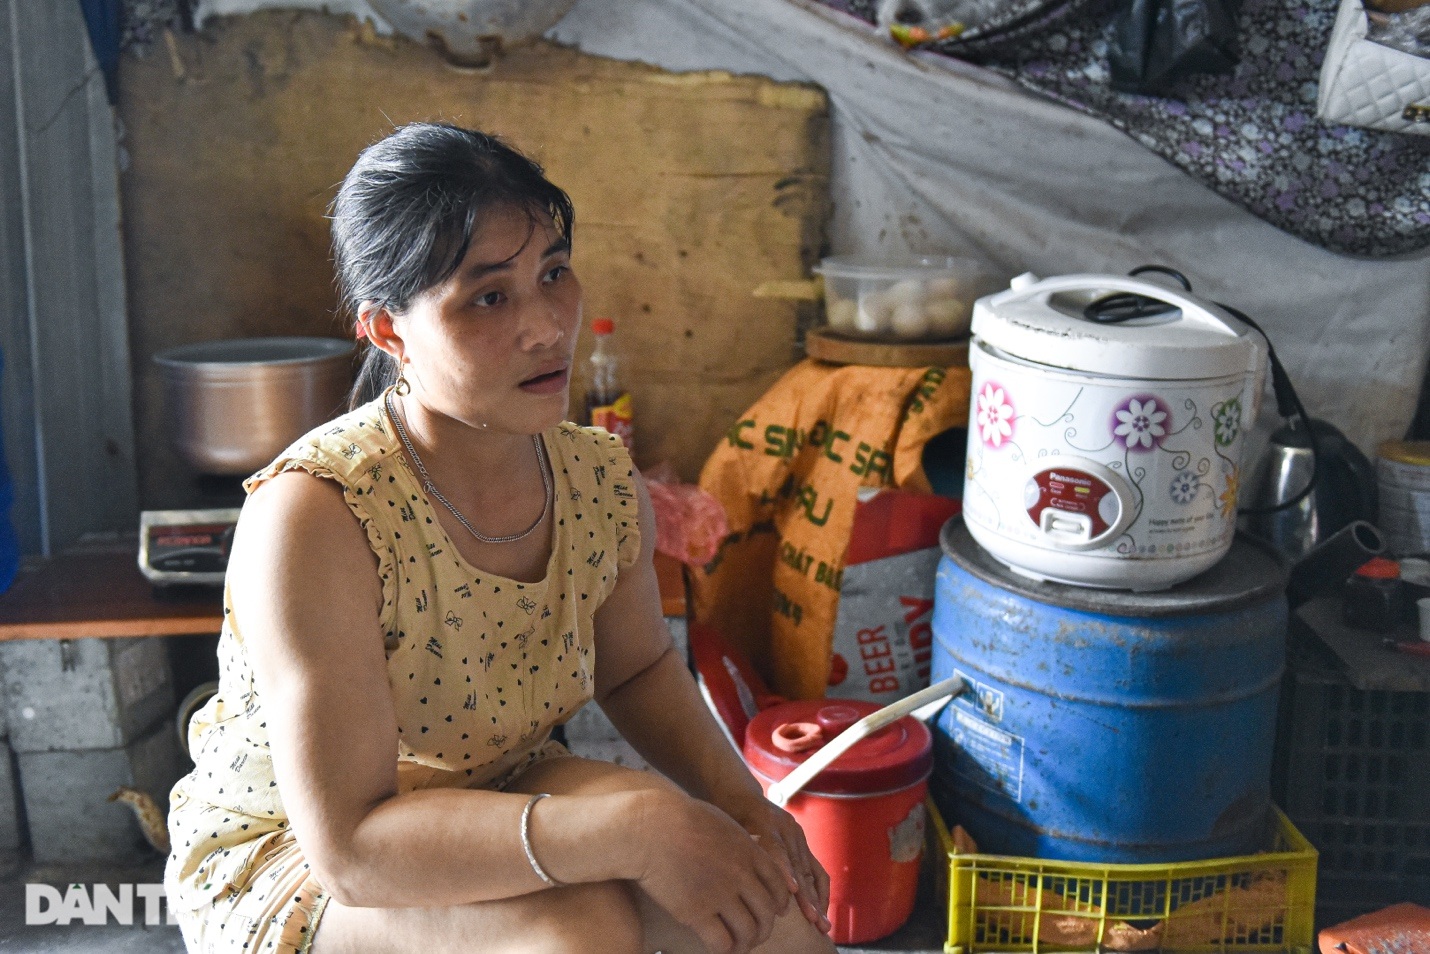 Bảng chi tiêu chỉ hơn 3 triệu đồng/tháng của vợ chồng ở Hà Nội thời bão giá - 2